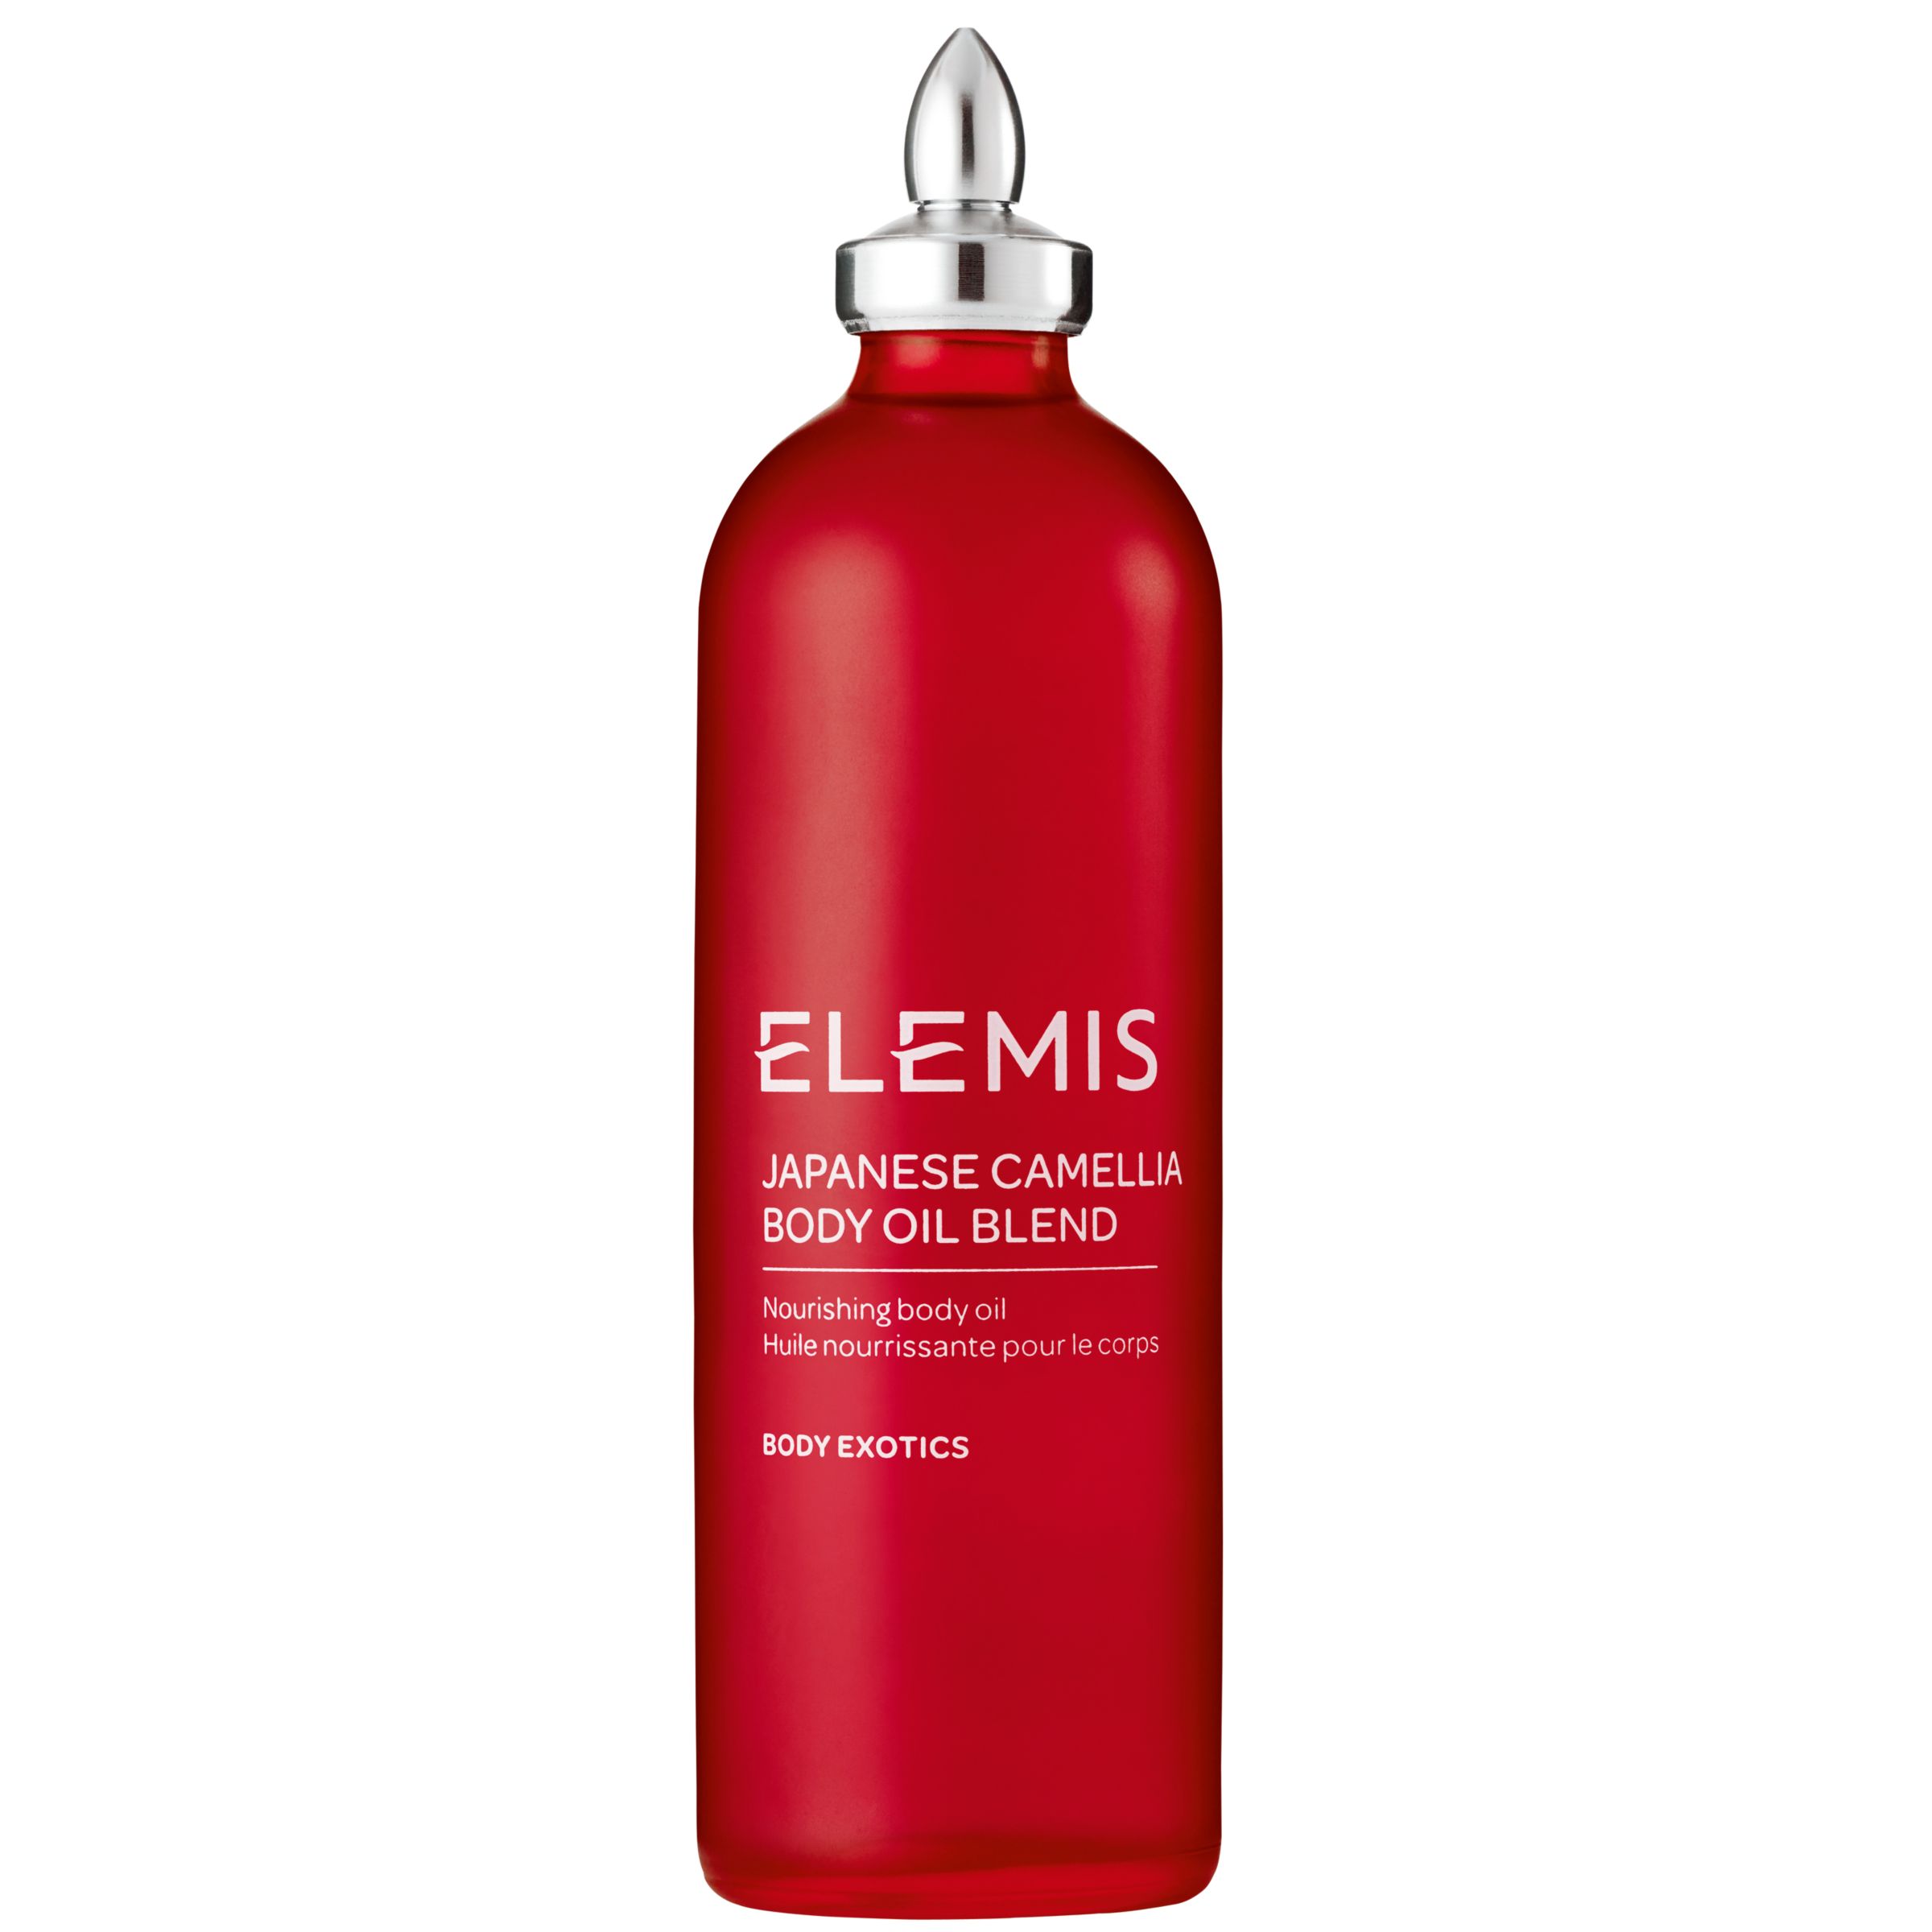 Elemis Japanese Camellia Oil Body Oil Blend, 100ml 1